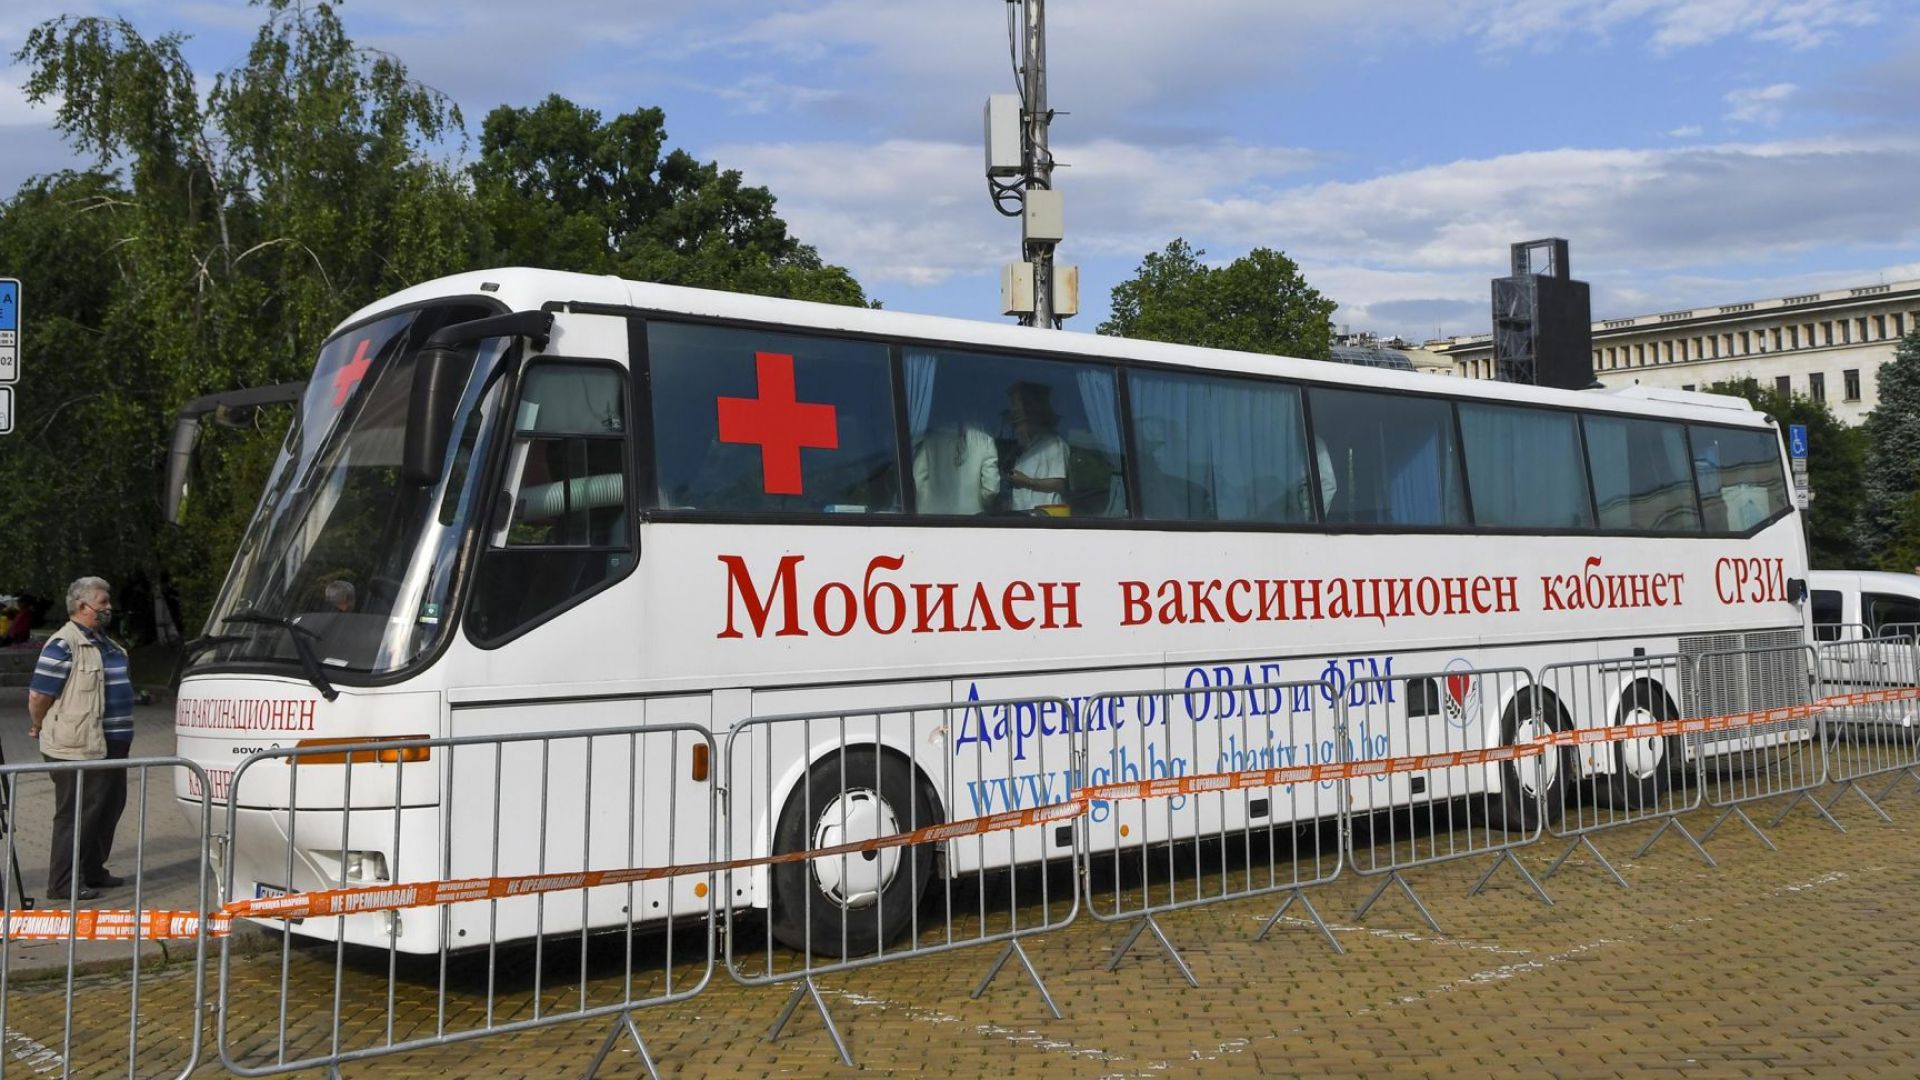 Ваксинационен пункт в автобус заработи в София (снимки)